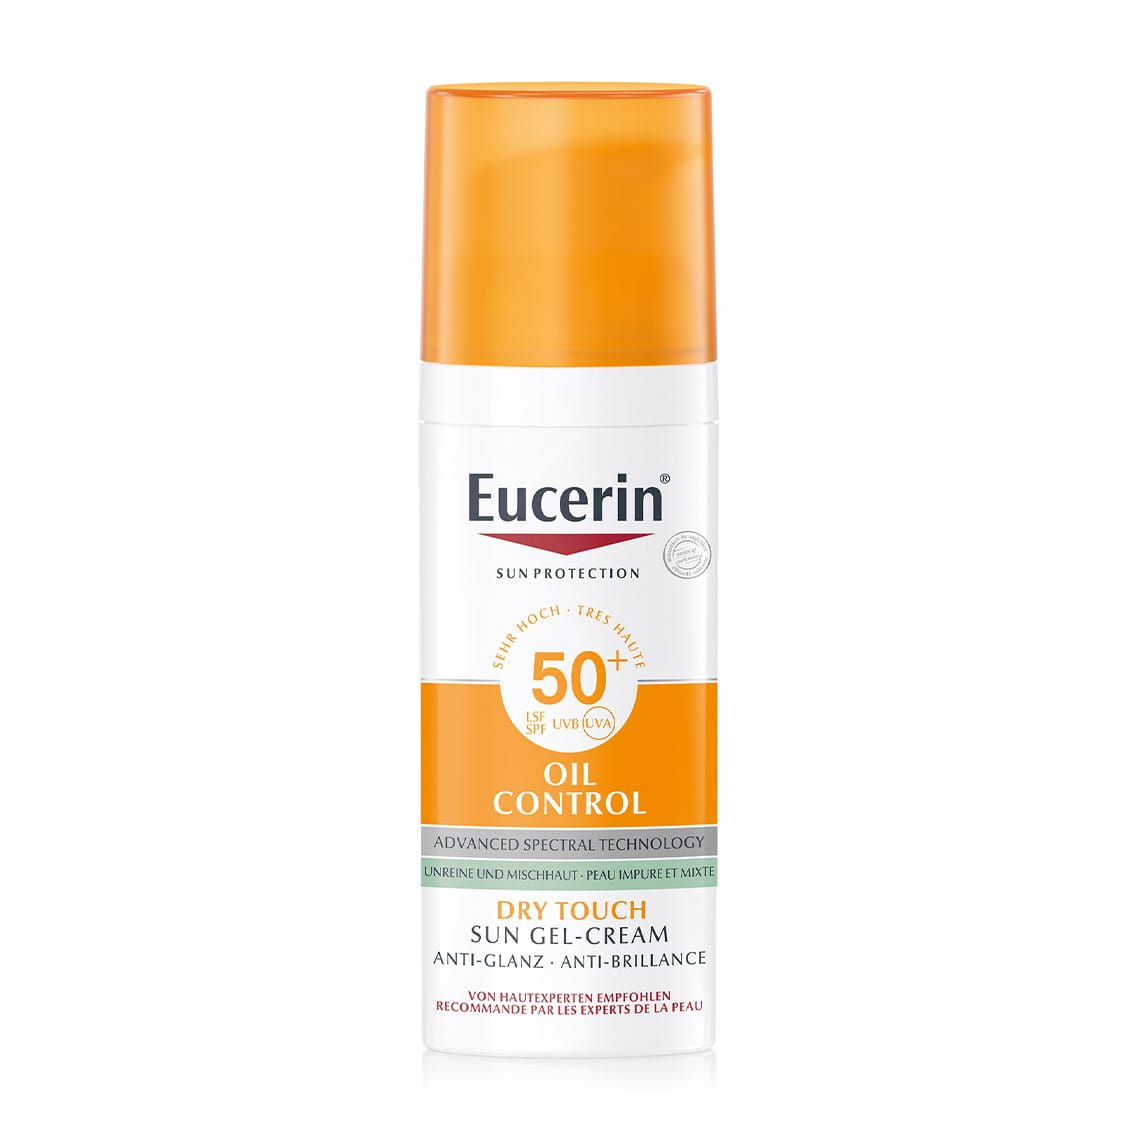 Eucerin Sun oil Control SPF 50+ (50ml)